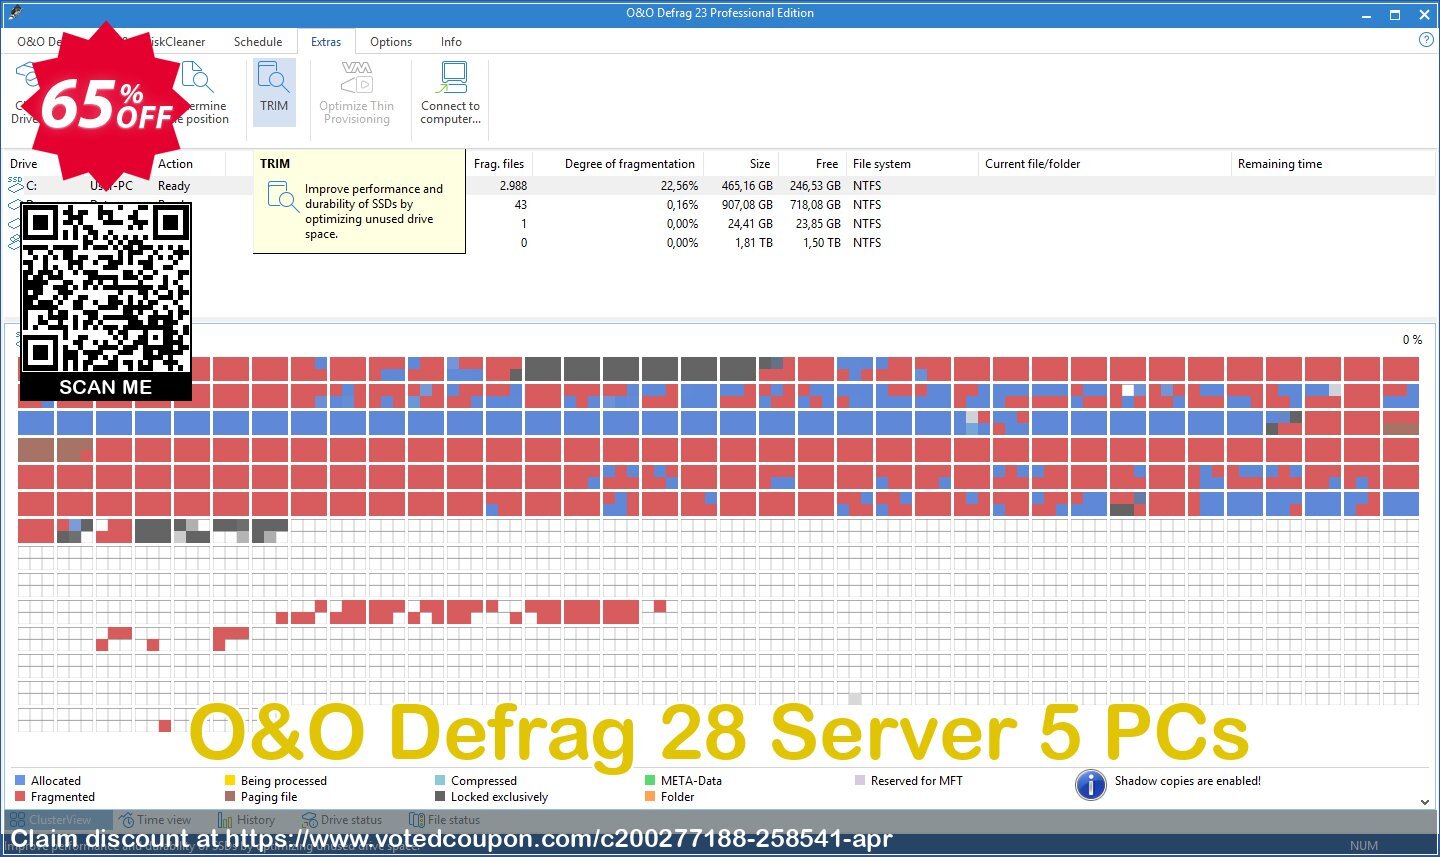 O&O Defrag 28 Server 5 PCs voted-on promotion codes